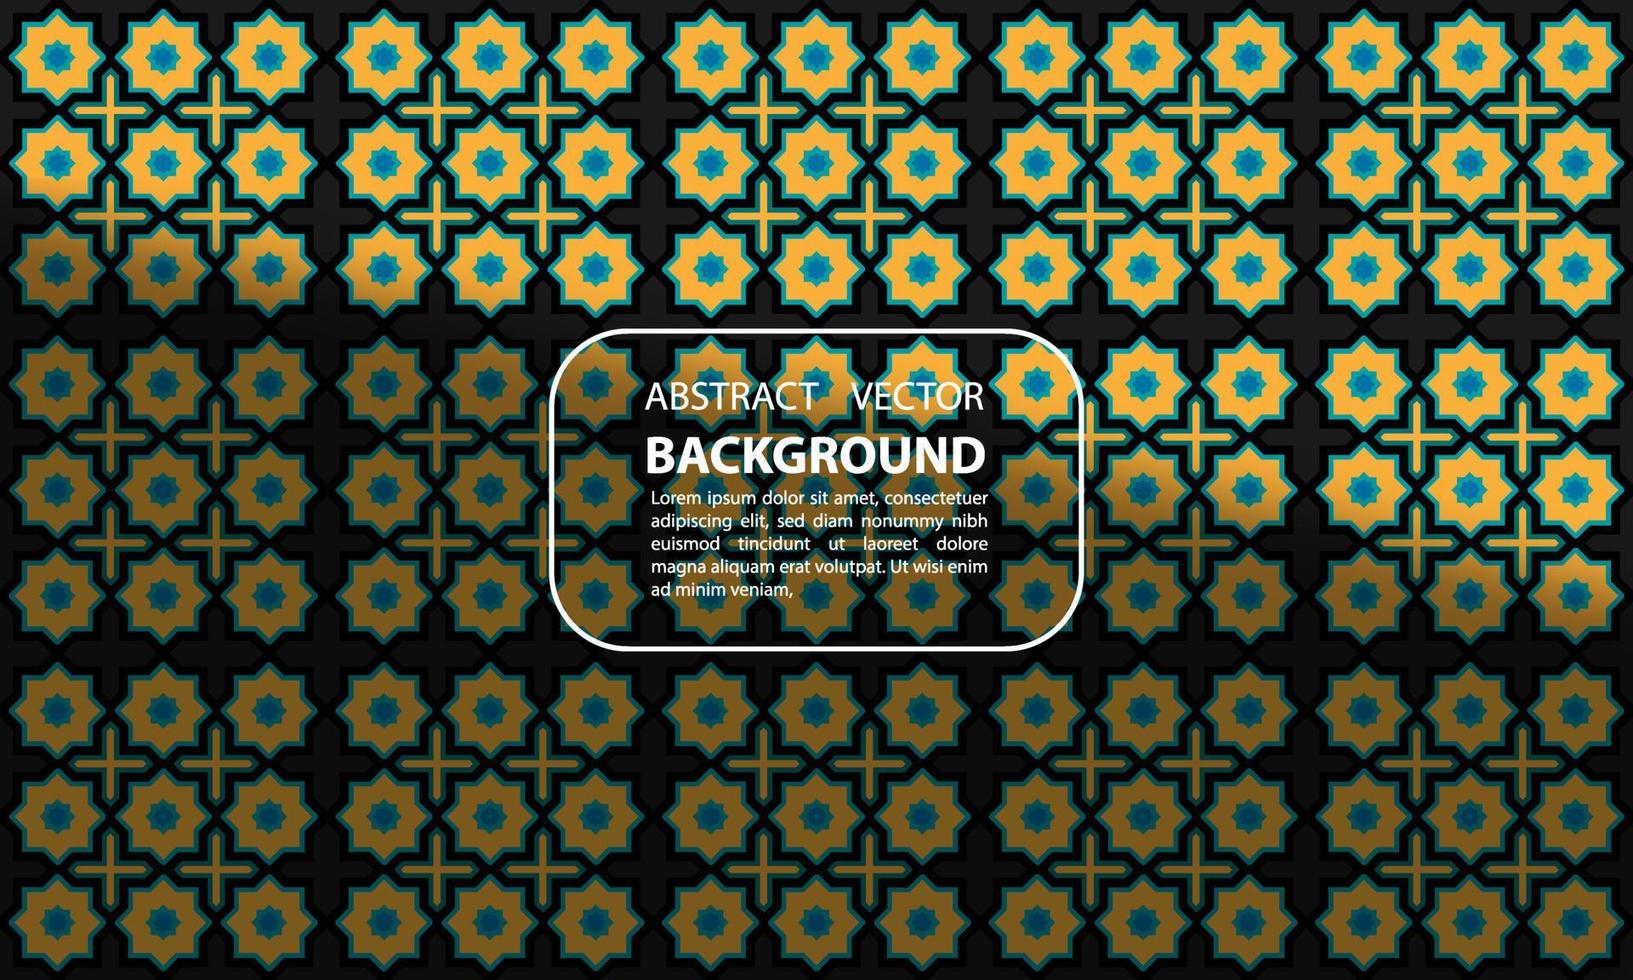 superposición de sombra de degradado geométrico de fondo abstracto naranja con patrón islámico multiplicado para carteles, pancartas y otros, diseño vectorial eps 10 vector